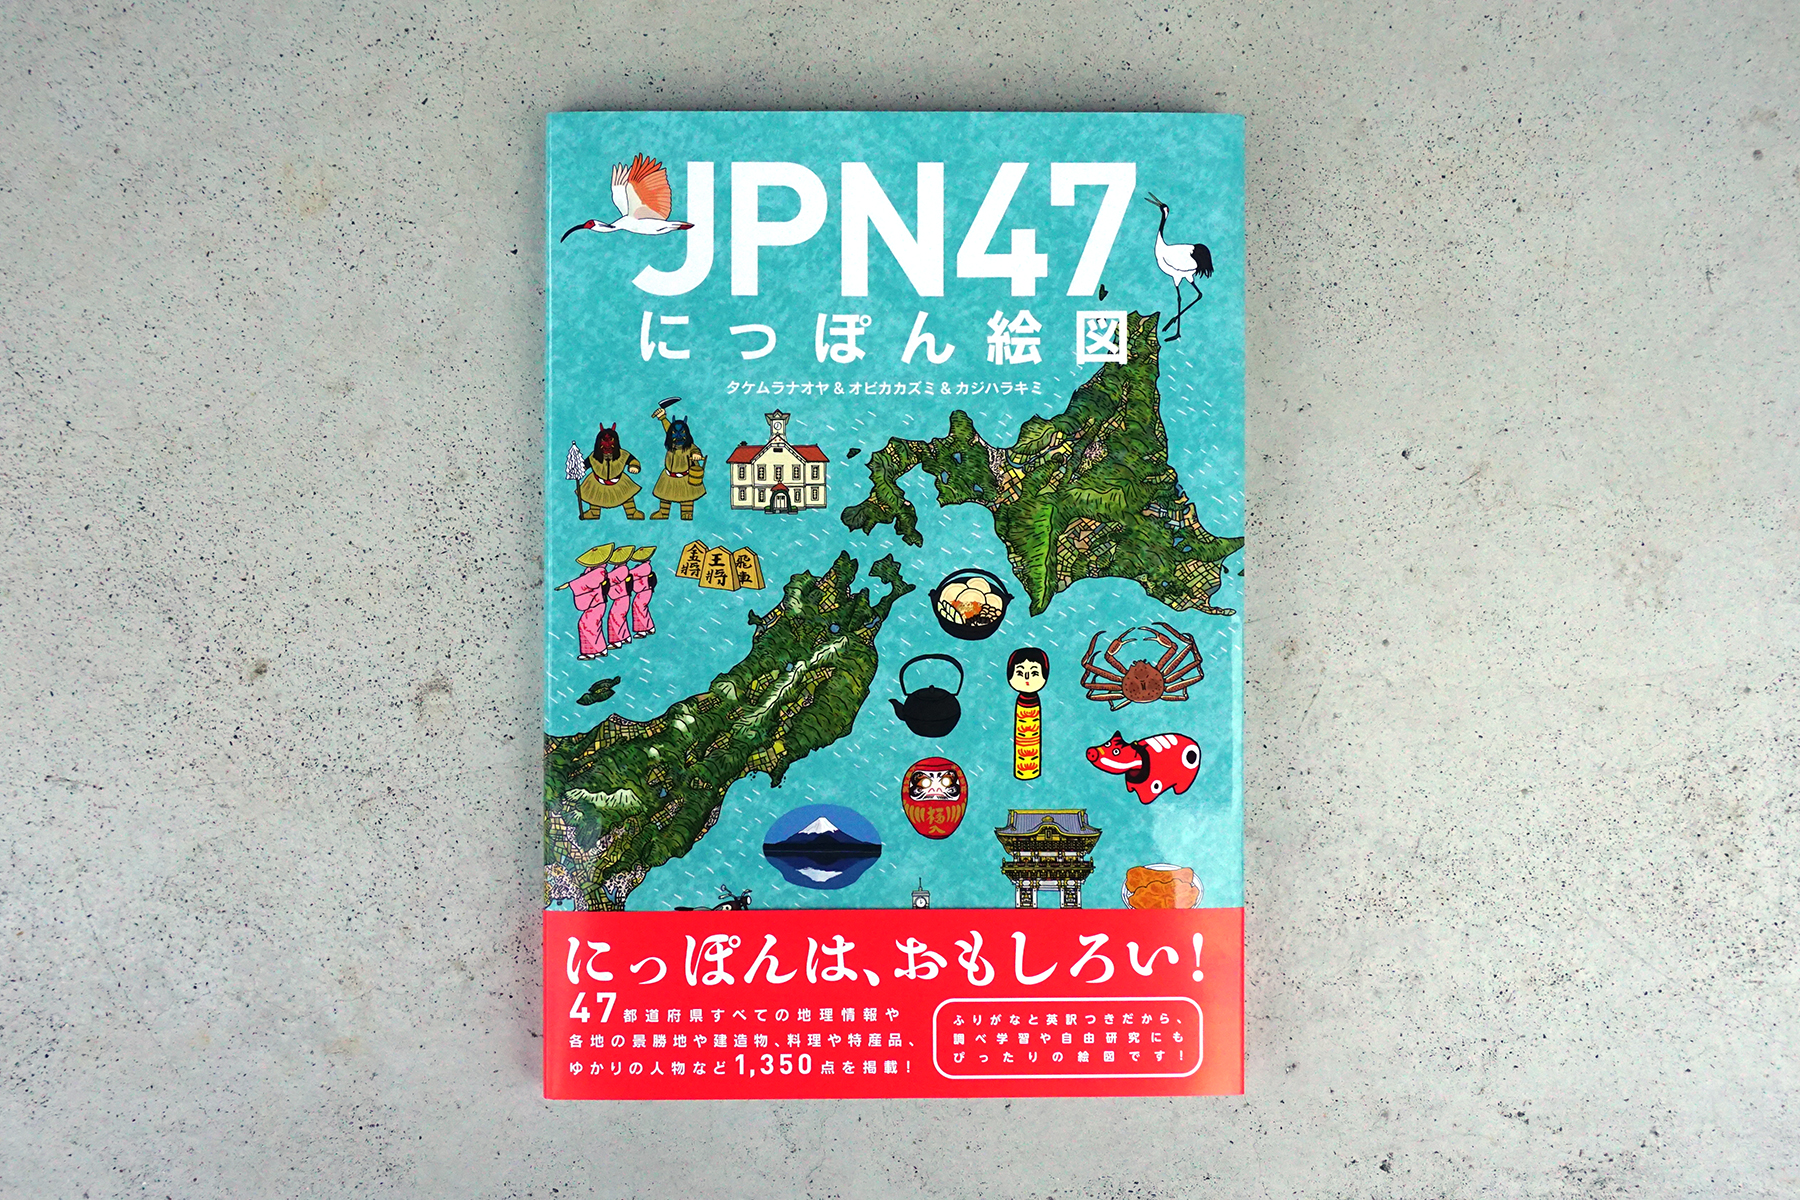 講談社『JPN47 にっぽん絵図』